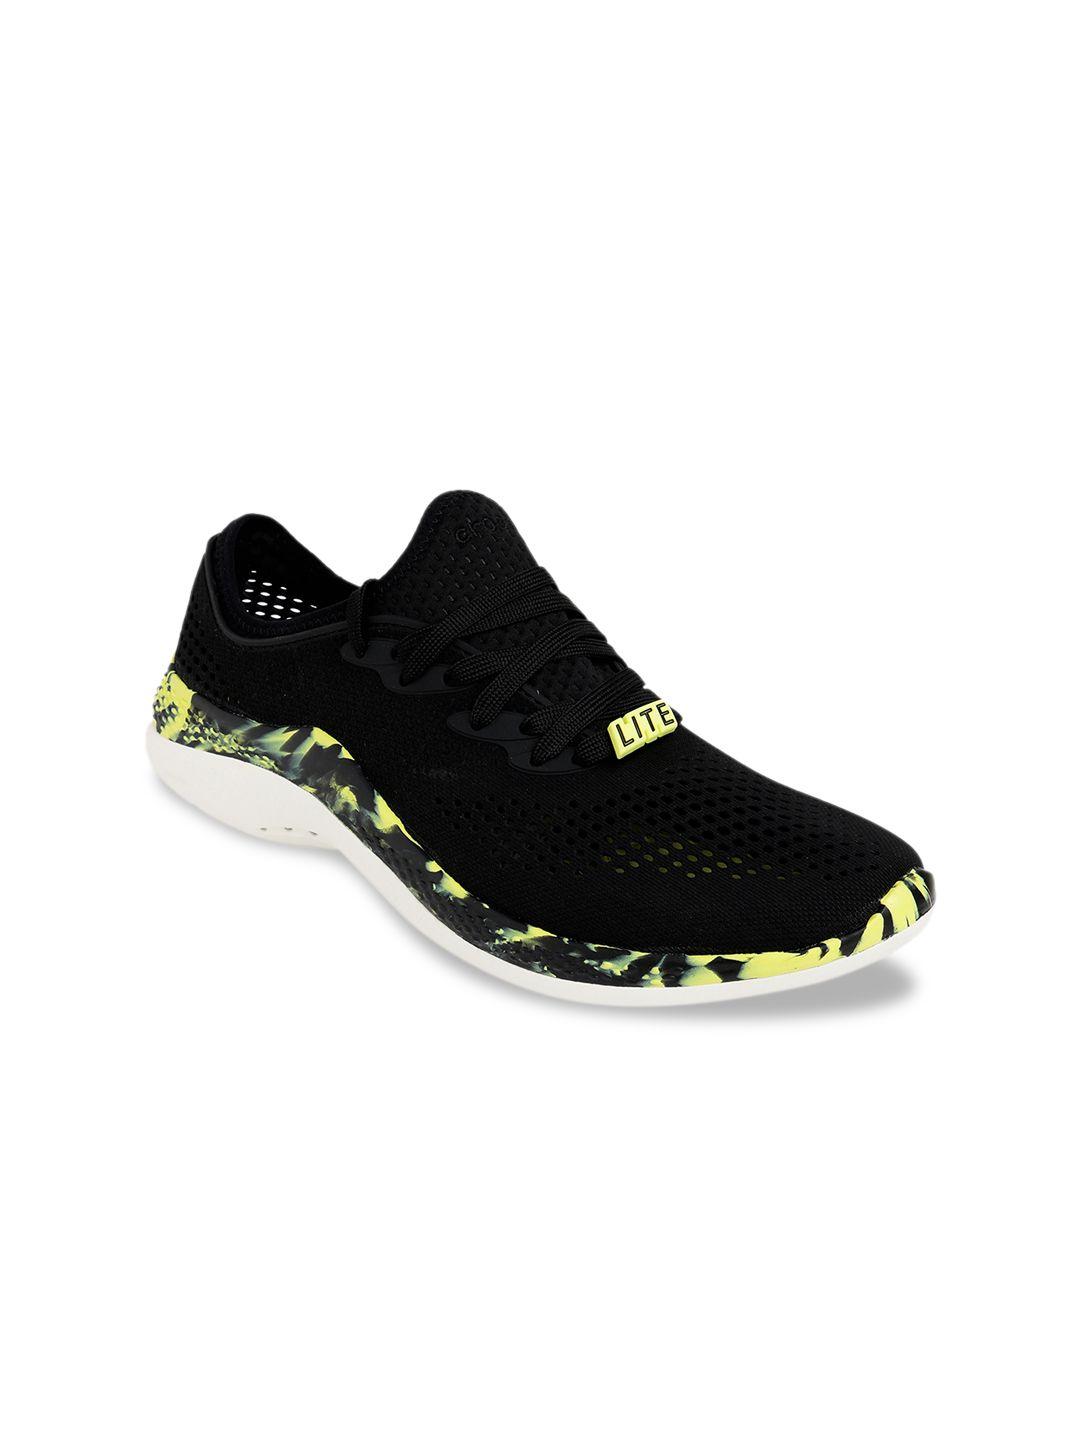 crocs-men-black-printed-sneakers